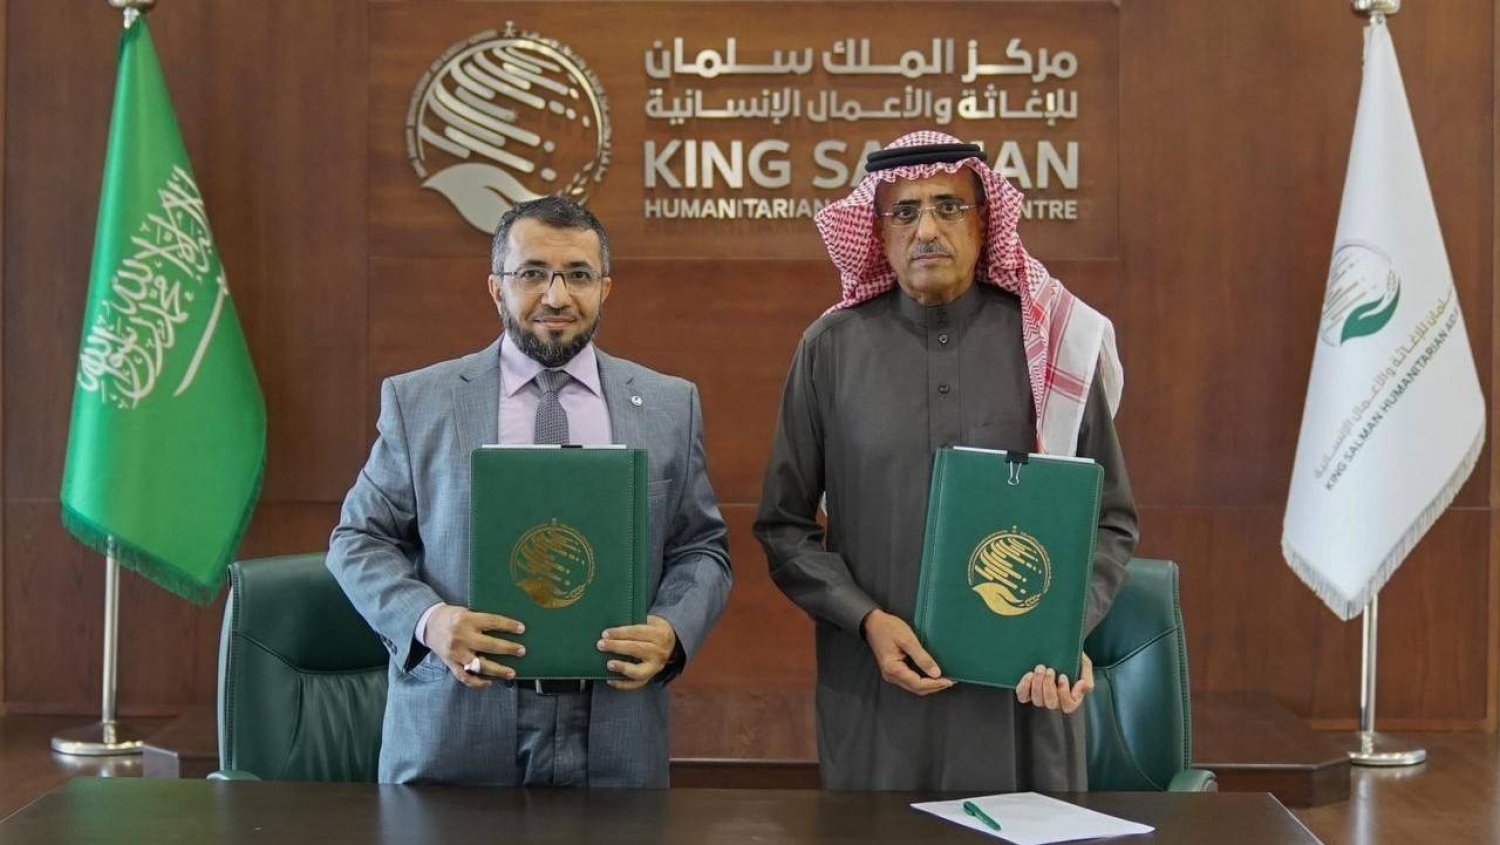 توقيع اتفاقية بين اليمن والسعودية لحفر وتطوير آبار المياه في 3 محافظات يمنية